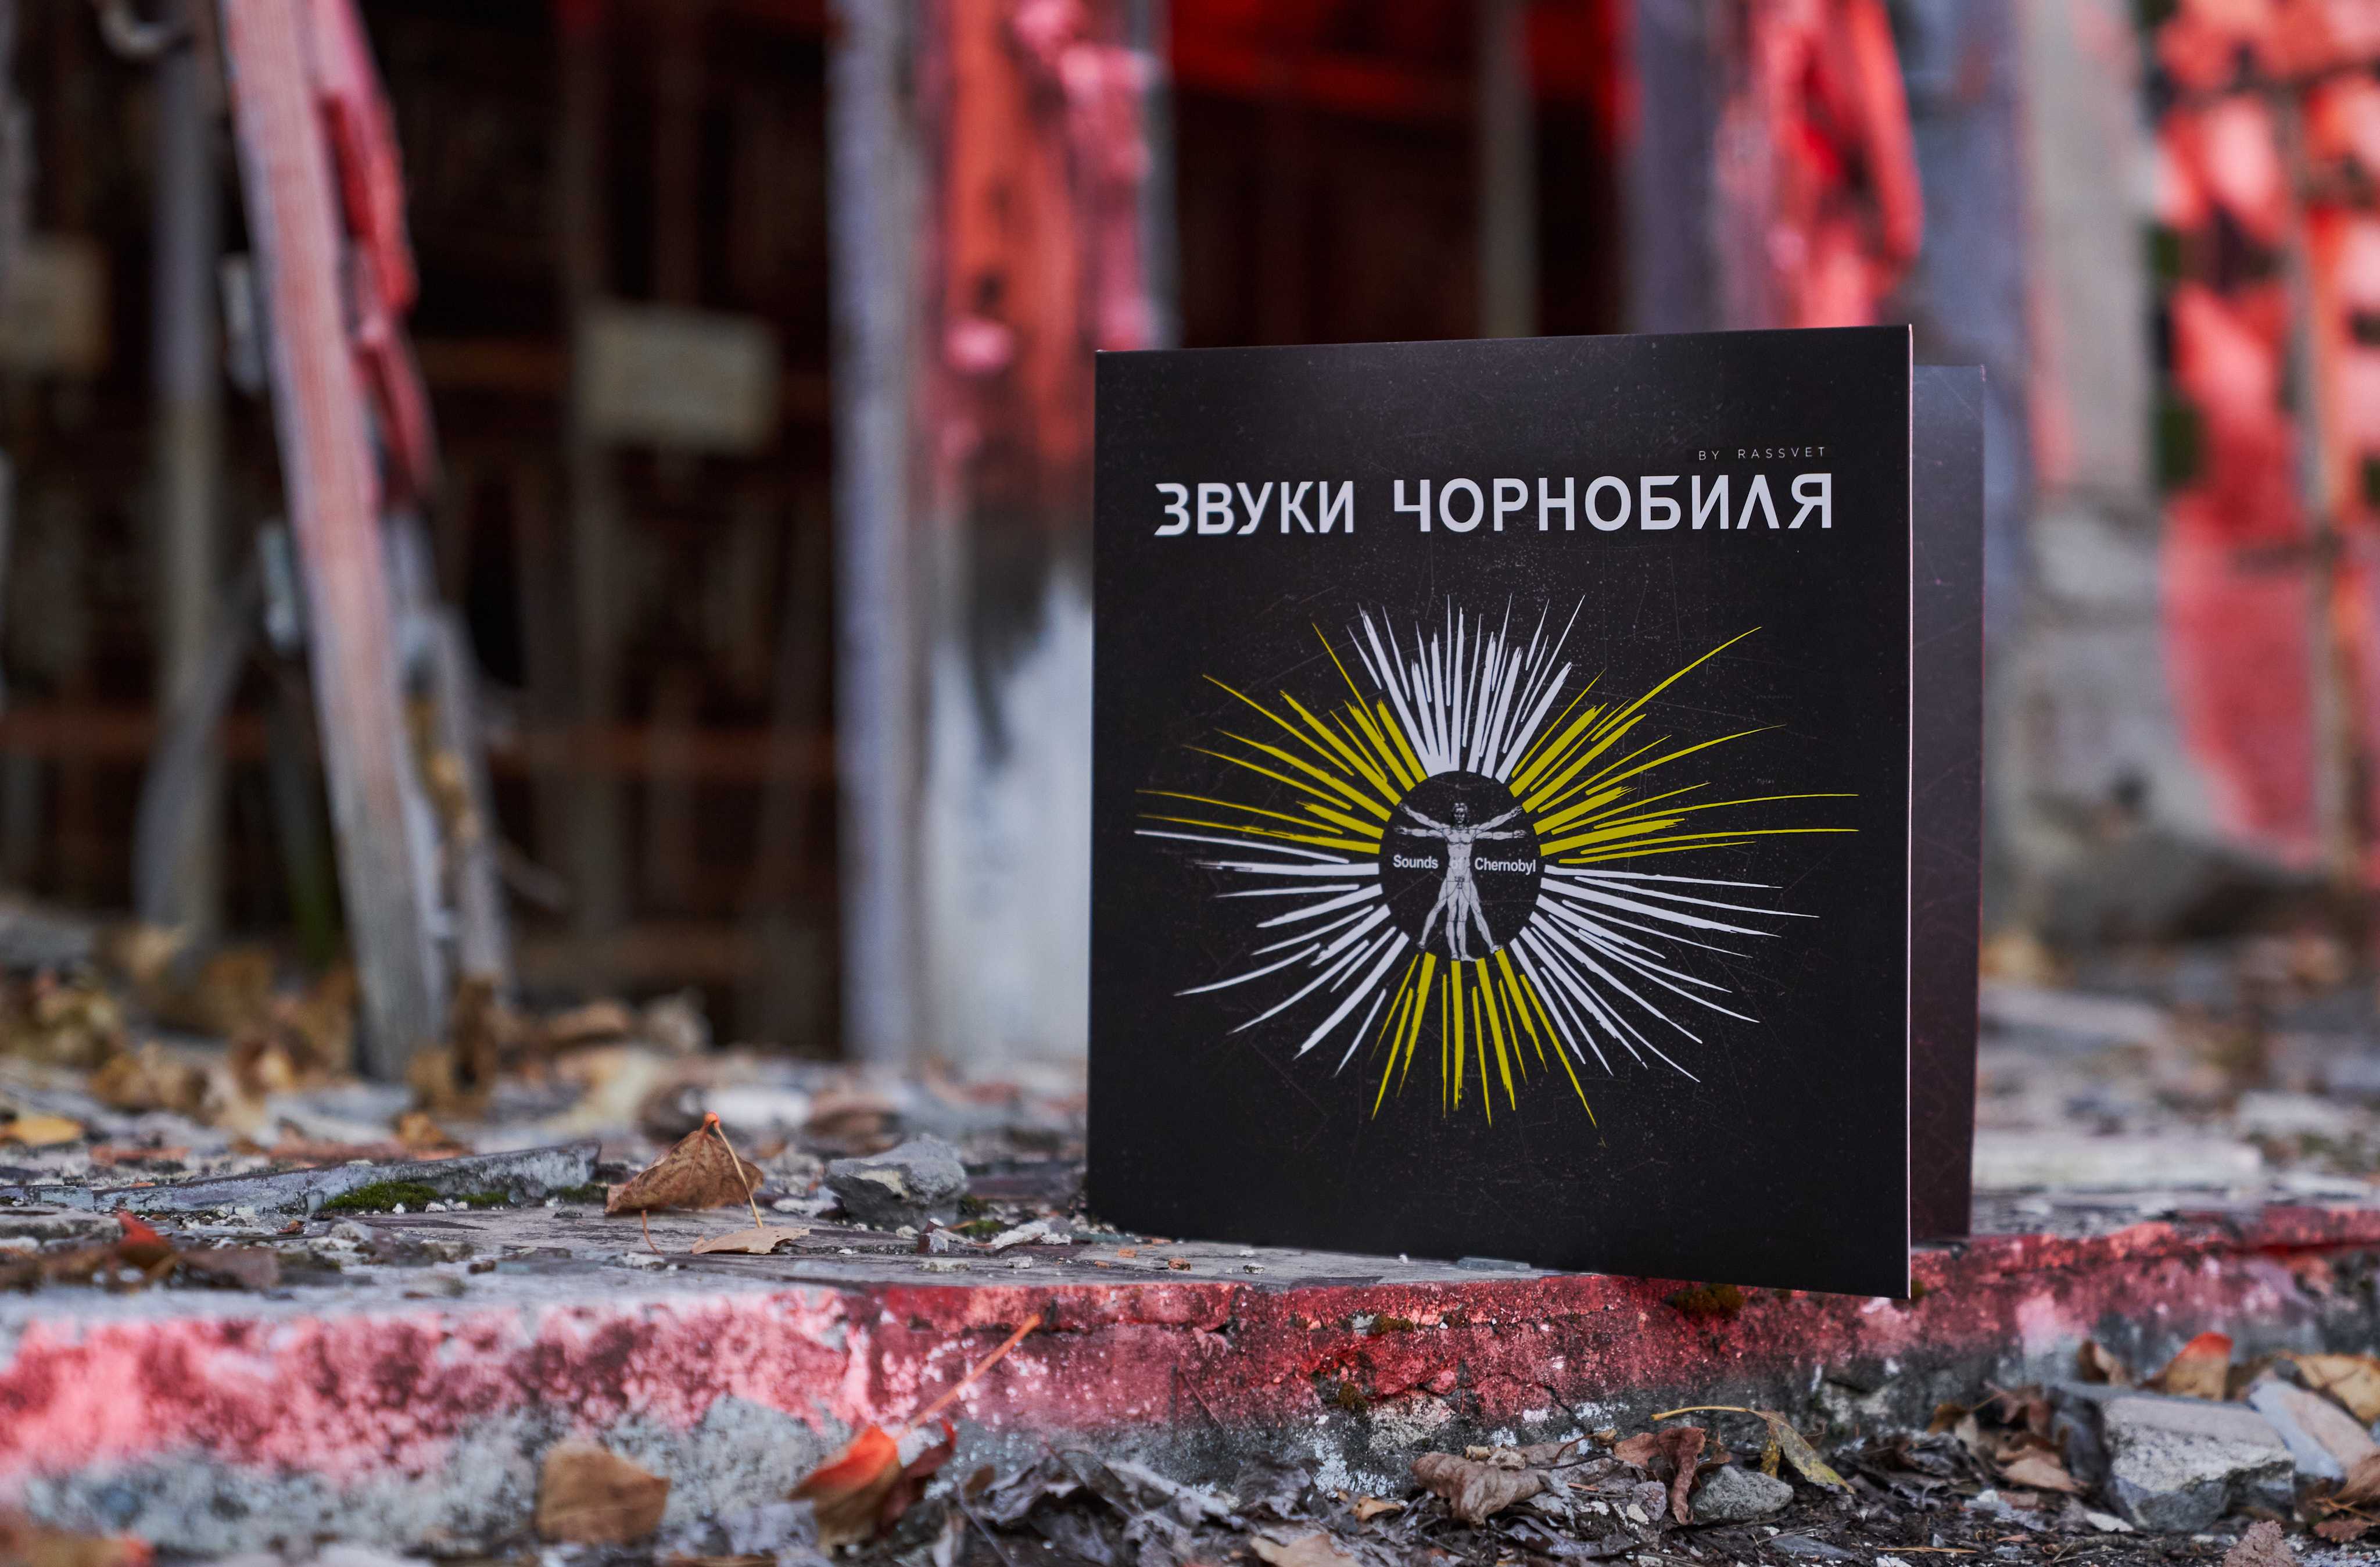 1 2 - У Прип’яті презентували платівку з доданою реальністю «Звуки Чорнобиля»